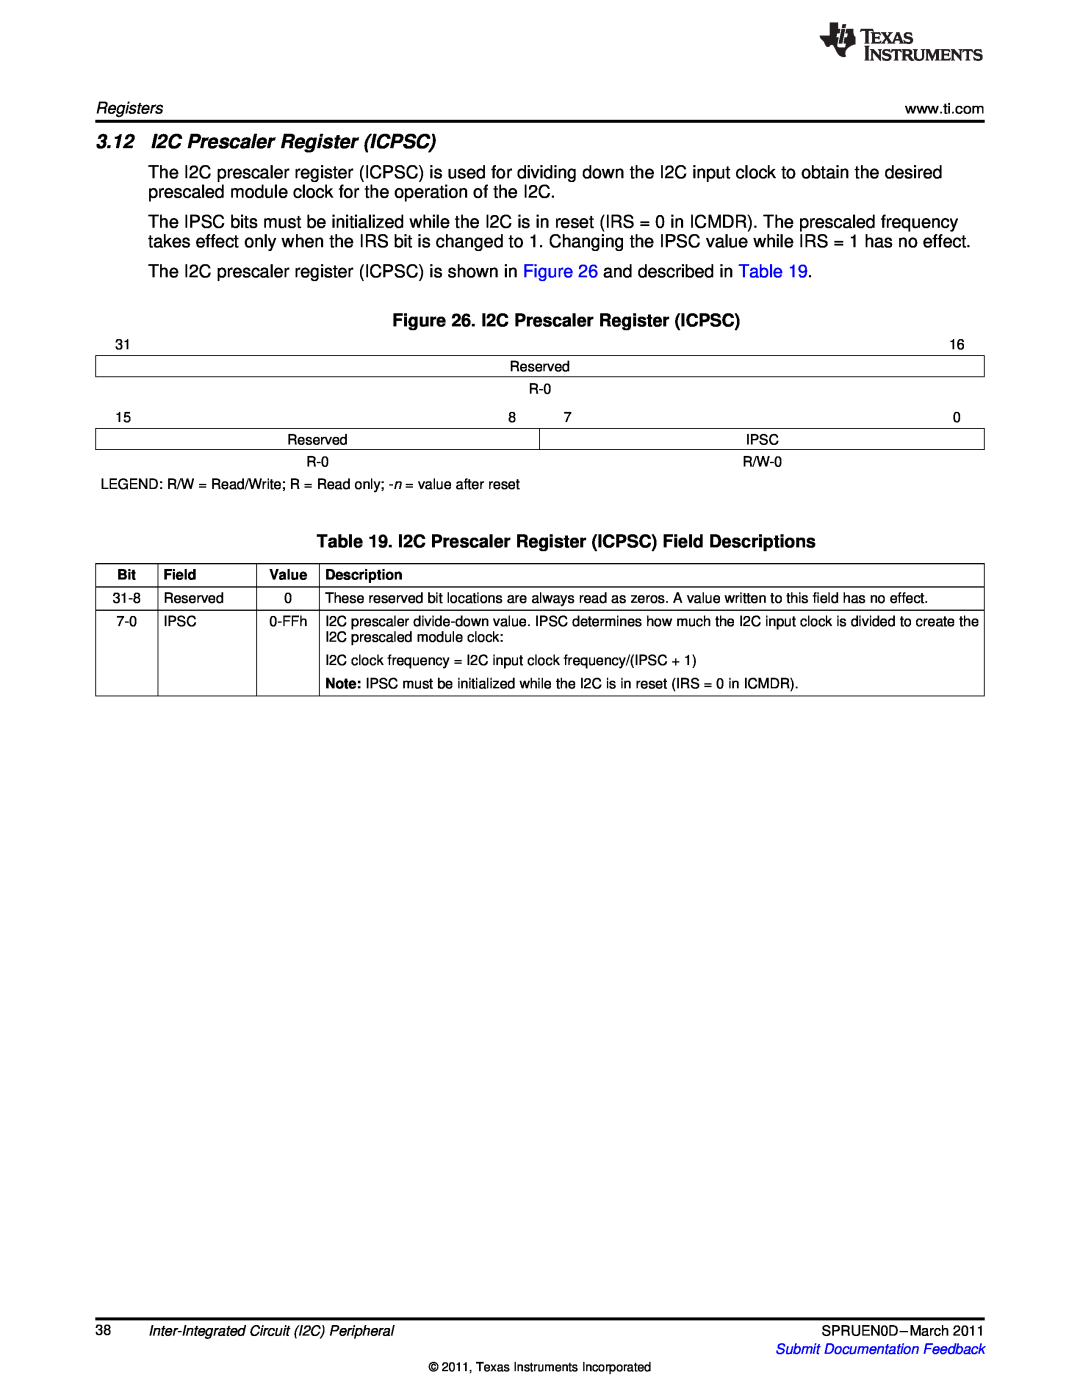 Texas Instruments TMS320C642X manual 3.12 I2C Prescaler Register ICPSC 